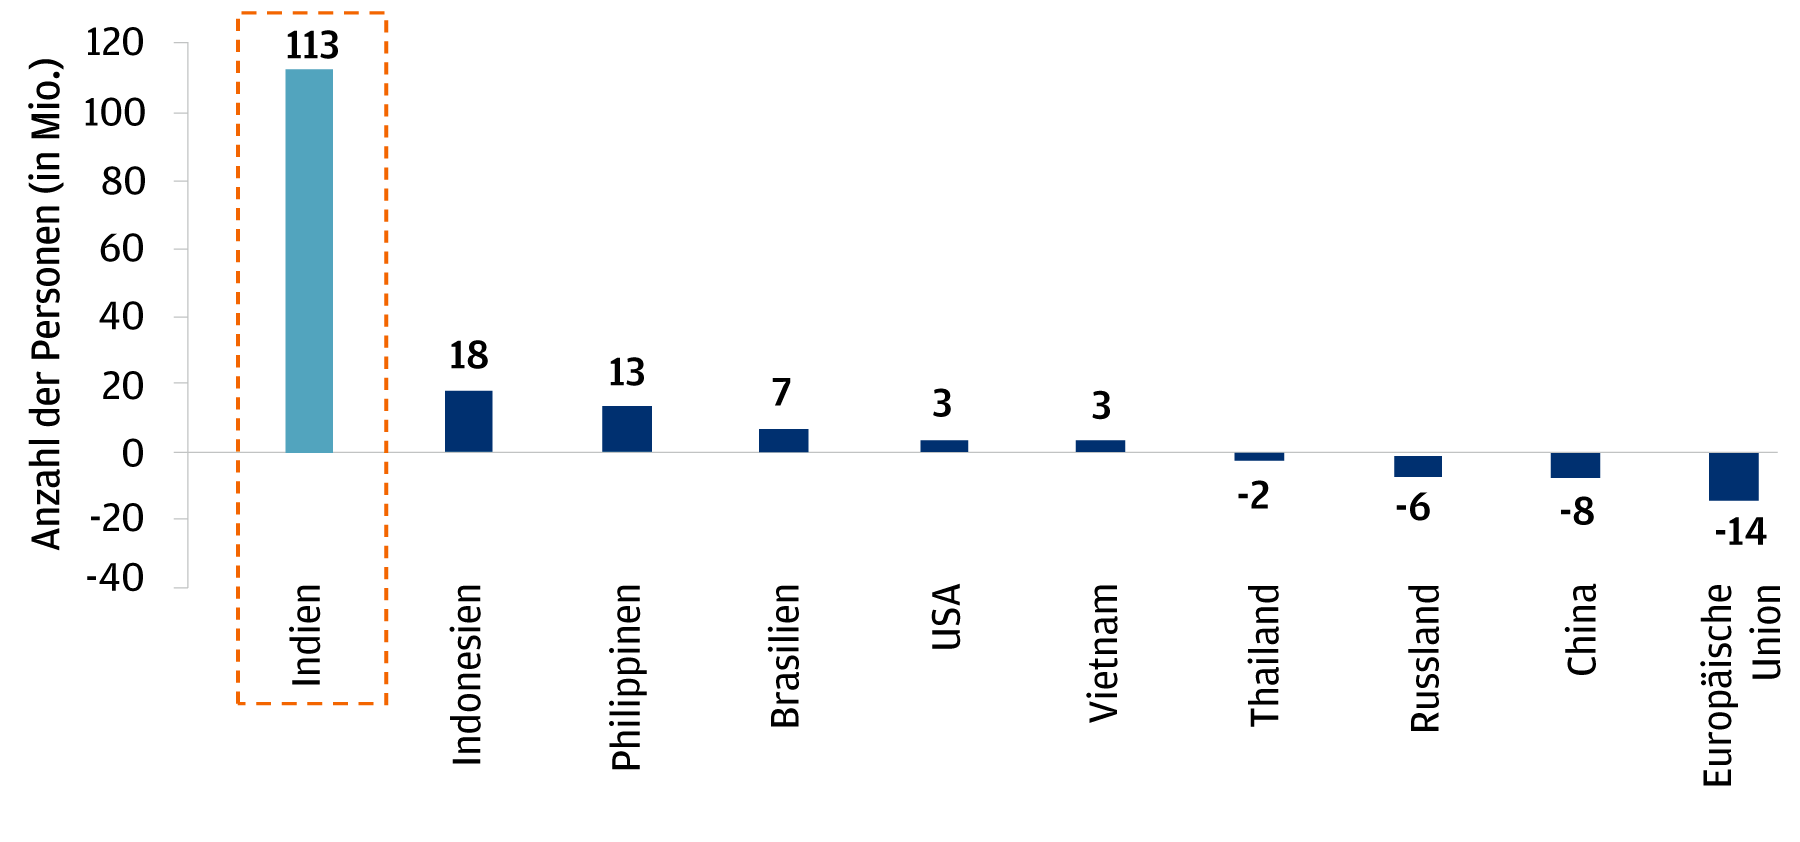 Das Balkendiagramm zeigt die prognostizierte Veränderung der Bevölkerung im erwerbsfähigen Alter von 2018 bis 2028 in 10 Ländern: Indien, Indonesien, Philippinen, Brasilien, Vereinigte Staaten, Vietnam, Thailand, Russland, China, Europäische Union. 